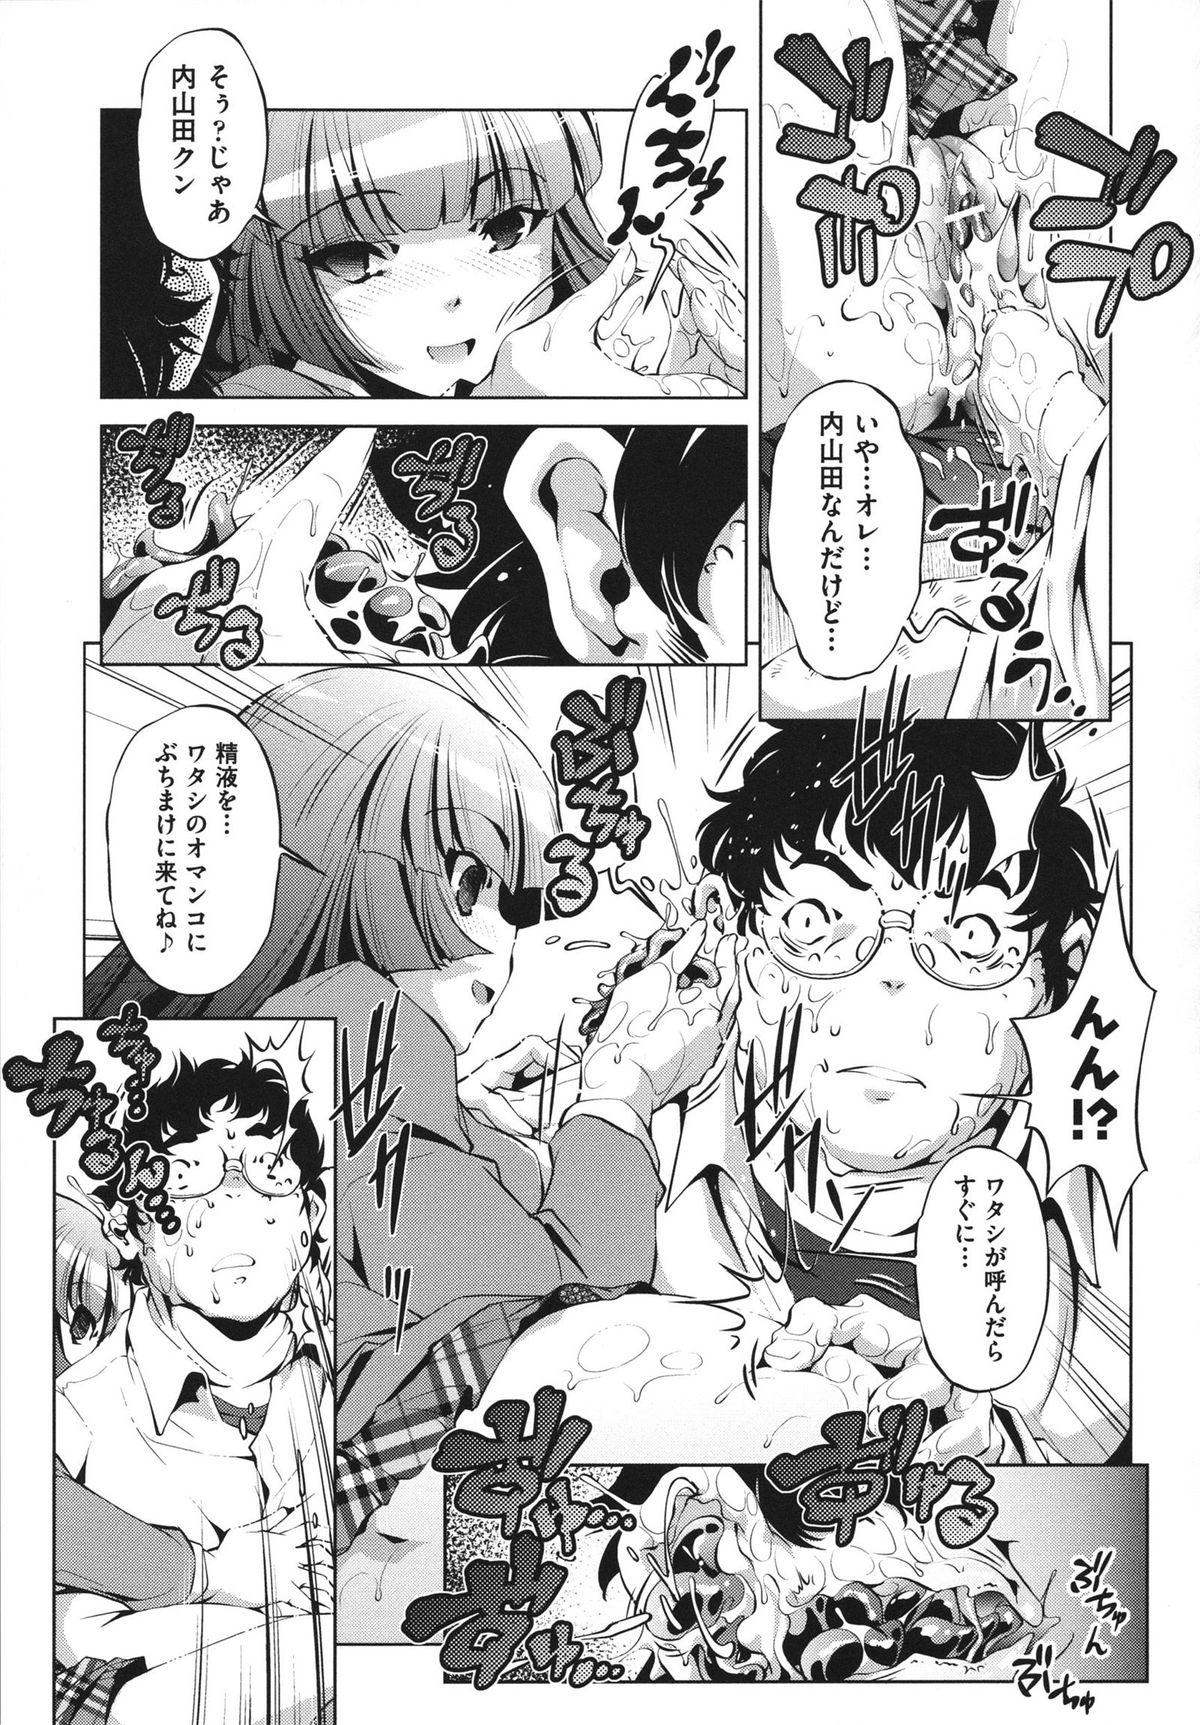 [Ootori Ryuuji] Shokushu wa Yawarakana Chibusa ni Makitsuki Onna-tachi no Ana wo Kakimidasu - Feeler coils around a soft breast and violates women's hole. 134